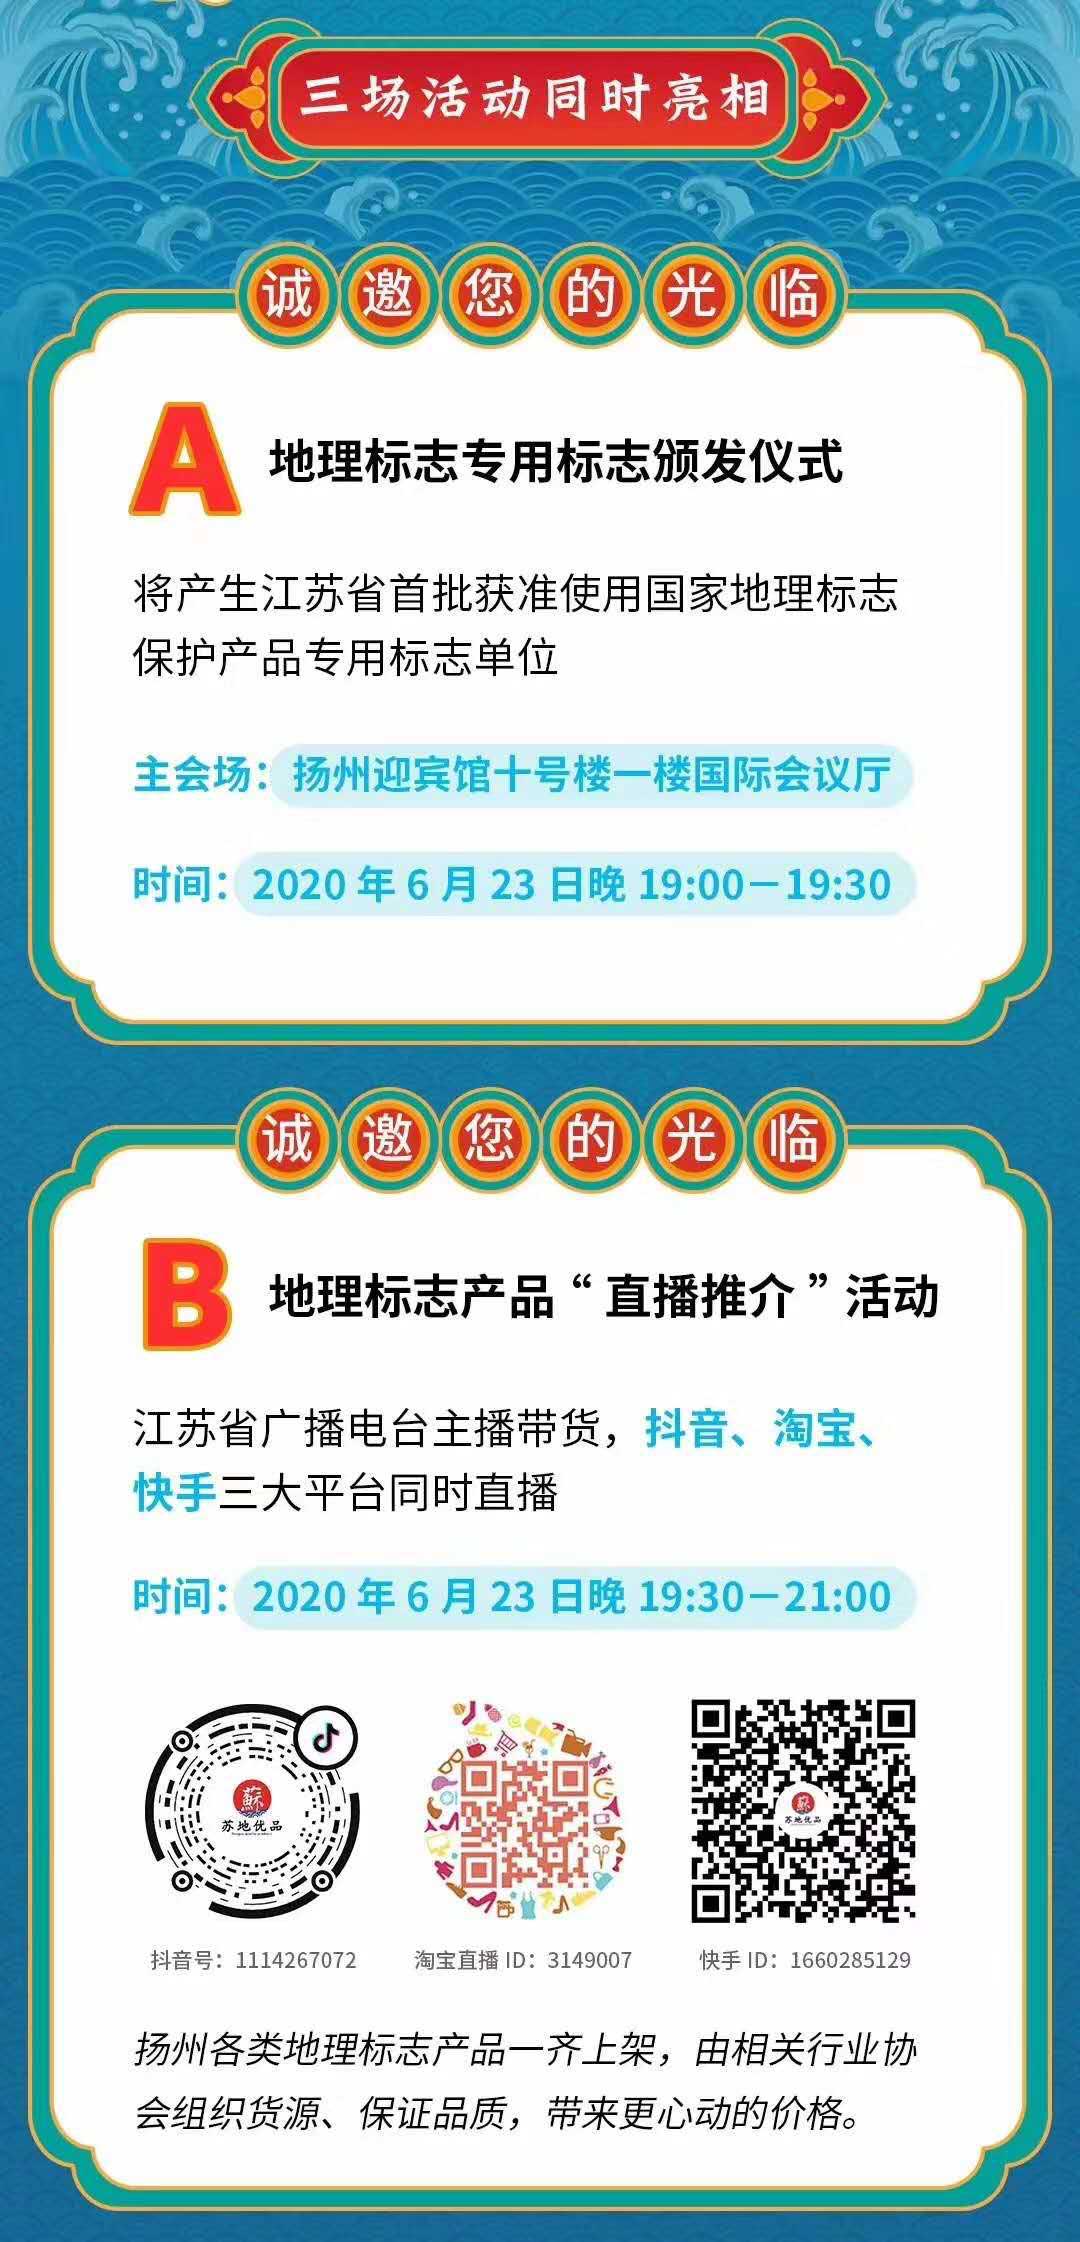 吃货福音！江苏地理标志品牌首场“直播推介”将于6月23日开启